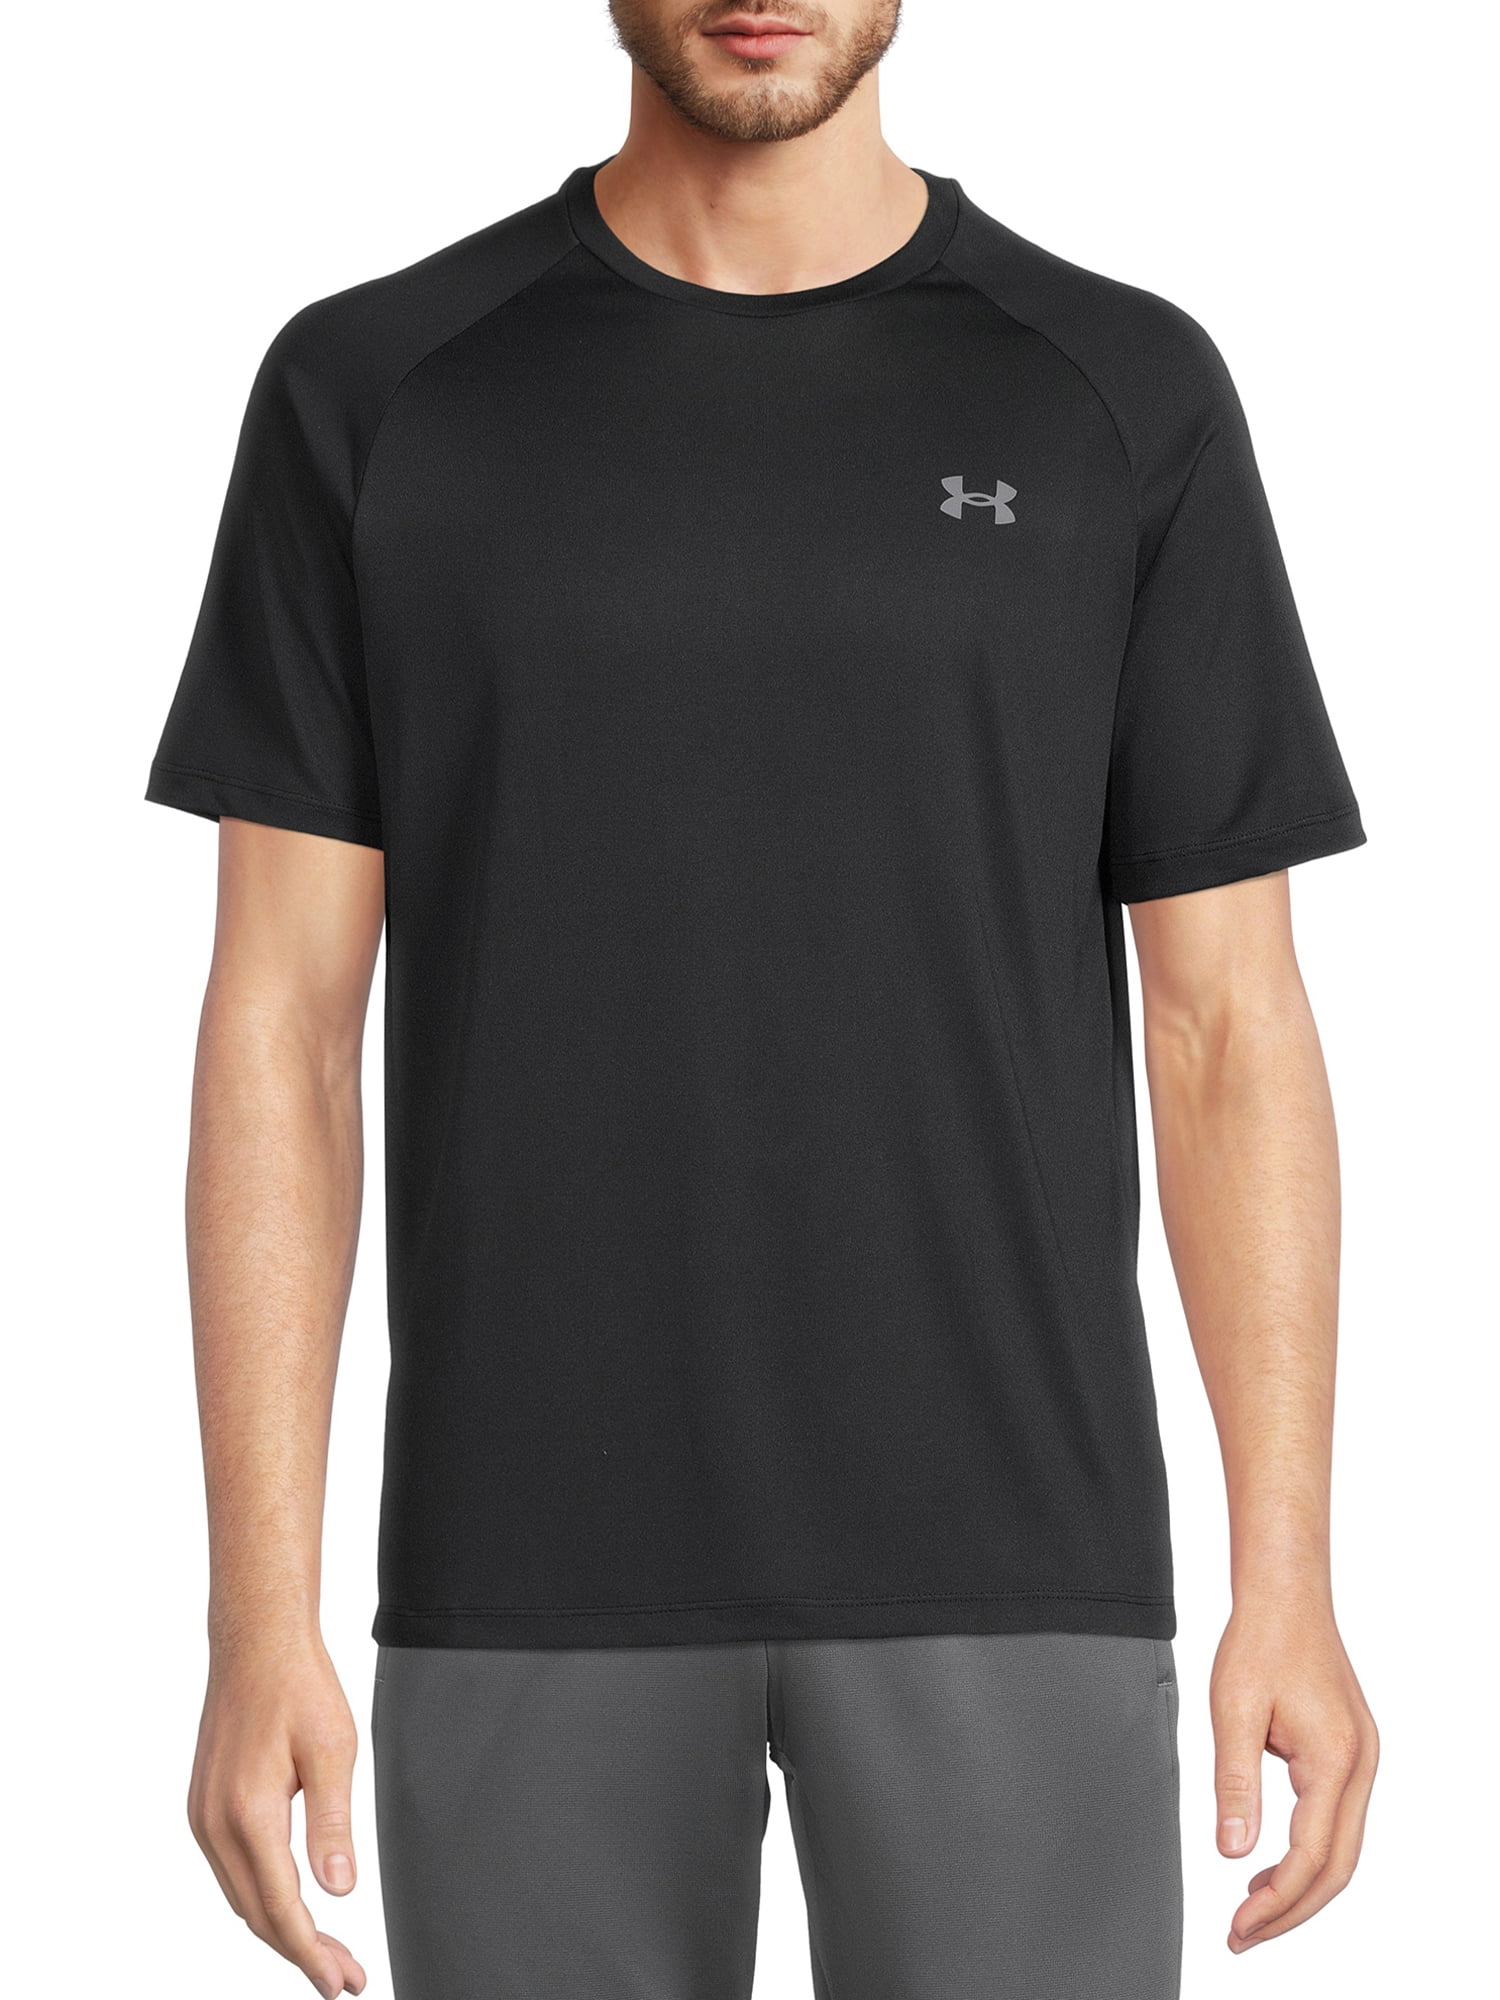 Under Men's and Big Men's Tech 2.0 Short Sleeve T-Shirt, Sizes S-2XL - Walmart.com